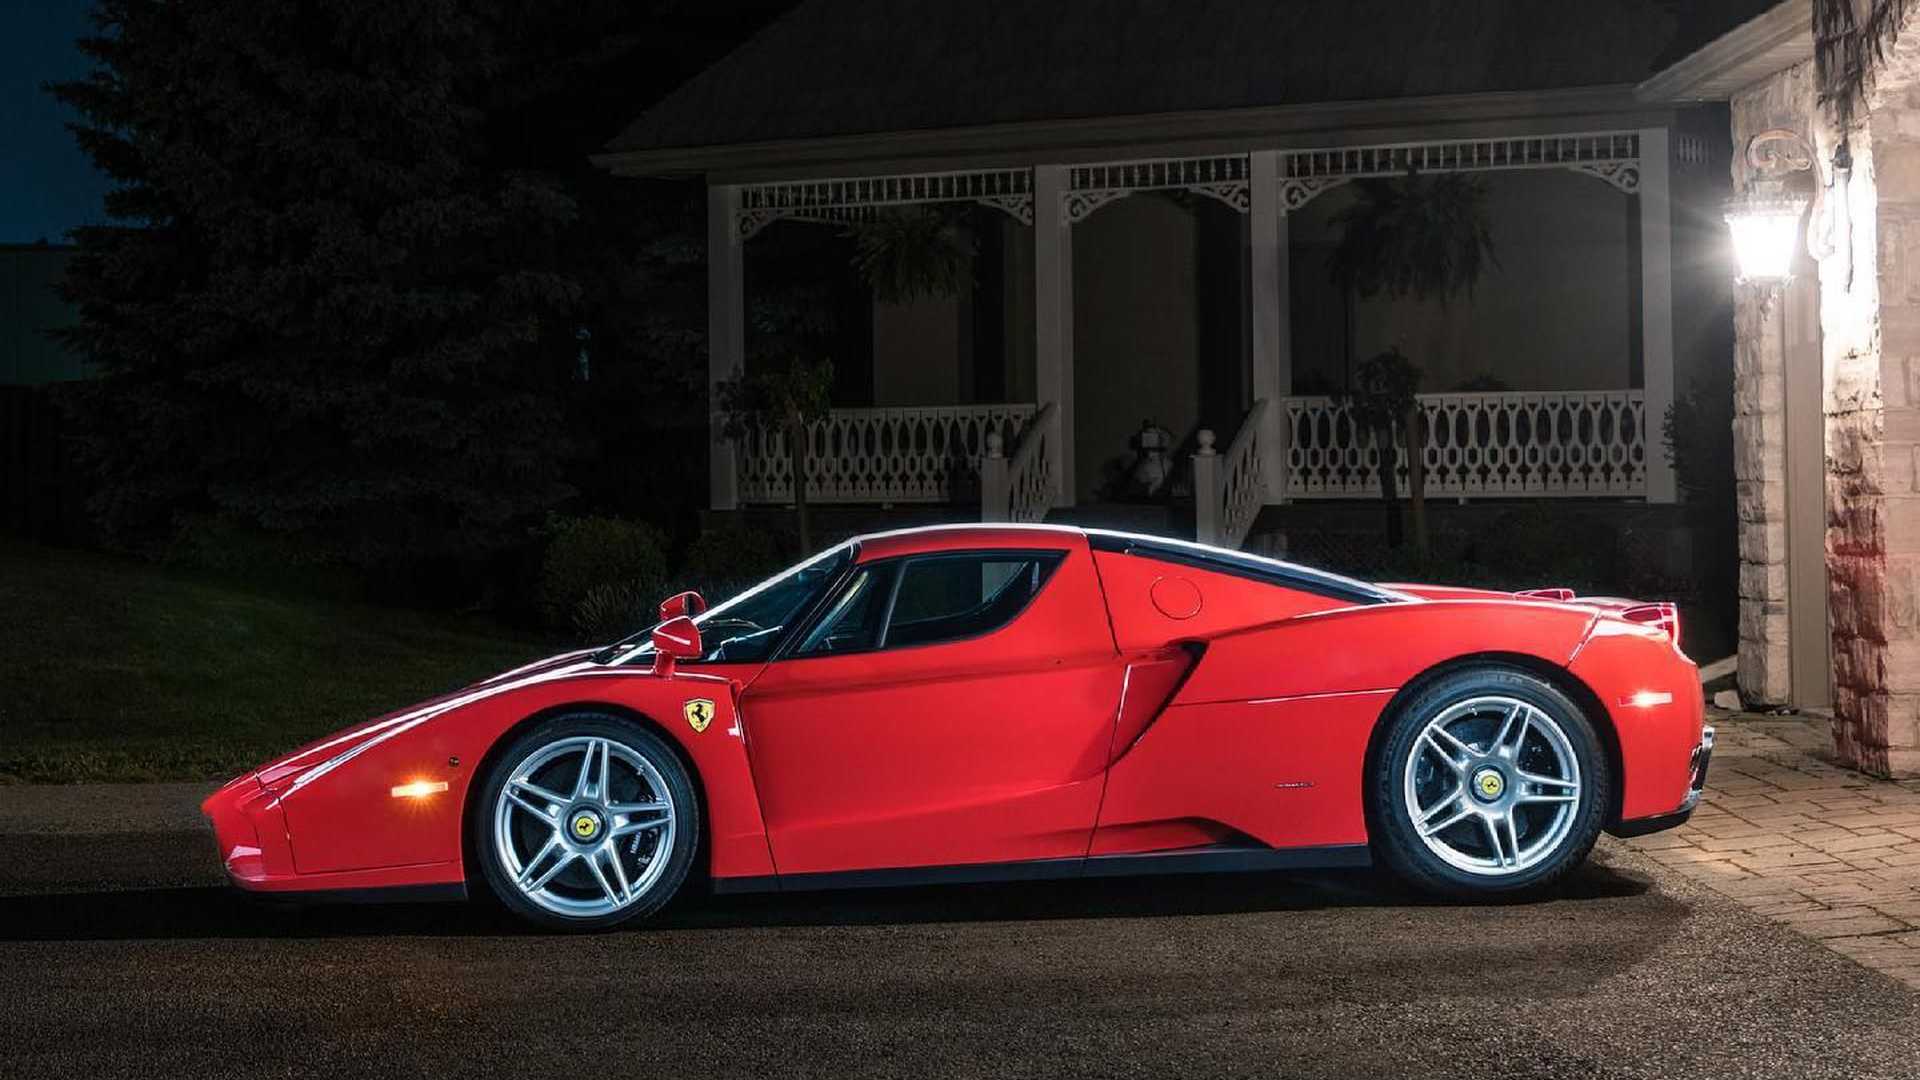 Sau 15 năm sử dụng và hơn 500km, Ferrari Enzo được bán lại với giá 3,8 triệu USD - Ảnh 3.